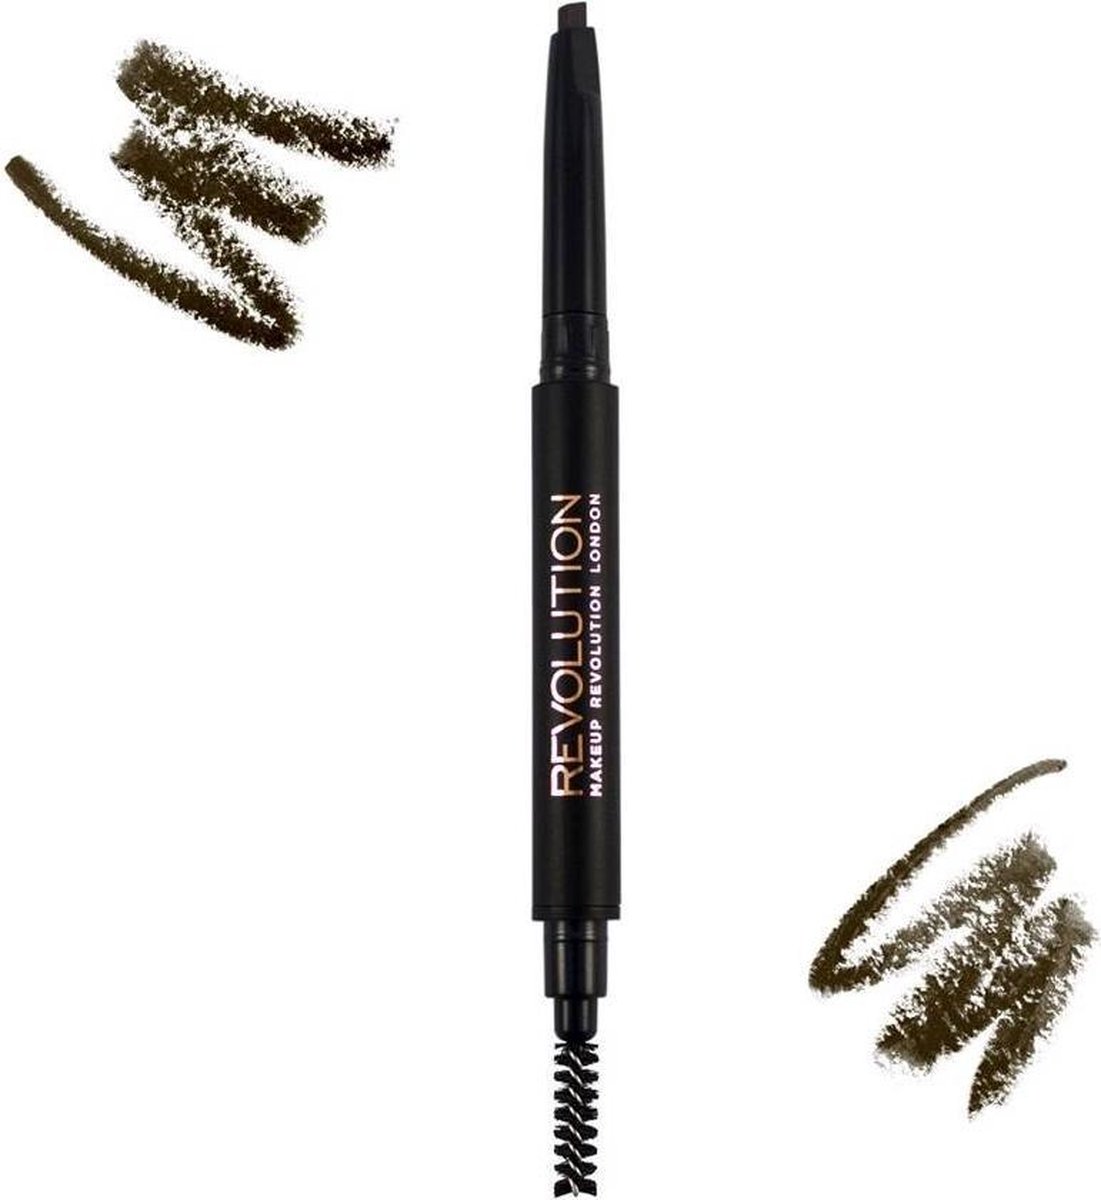 Makeup Revolution Duo Brow Pencil Medium Brown - Middenbruin tot donkerbruin haar.